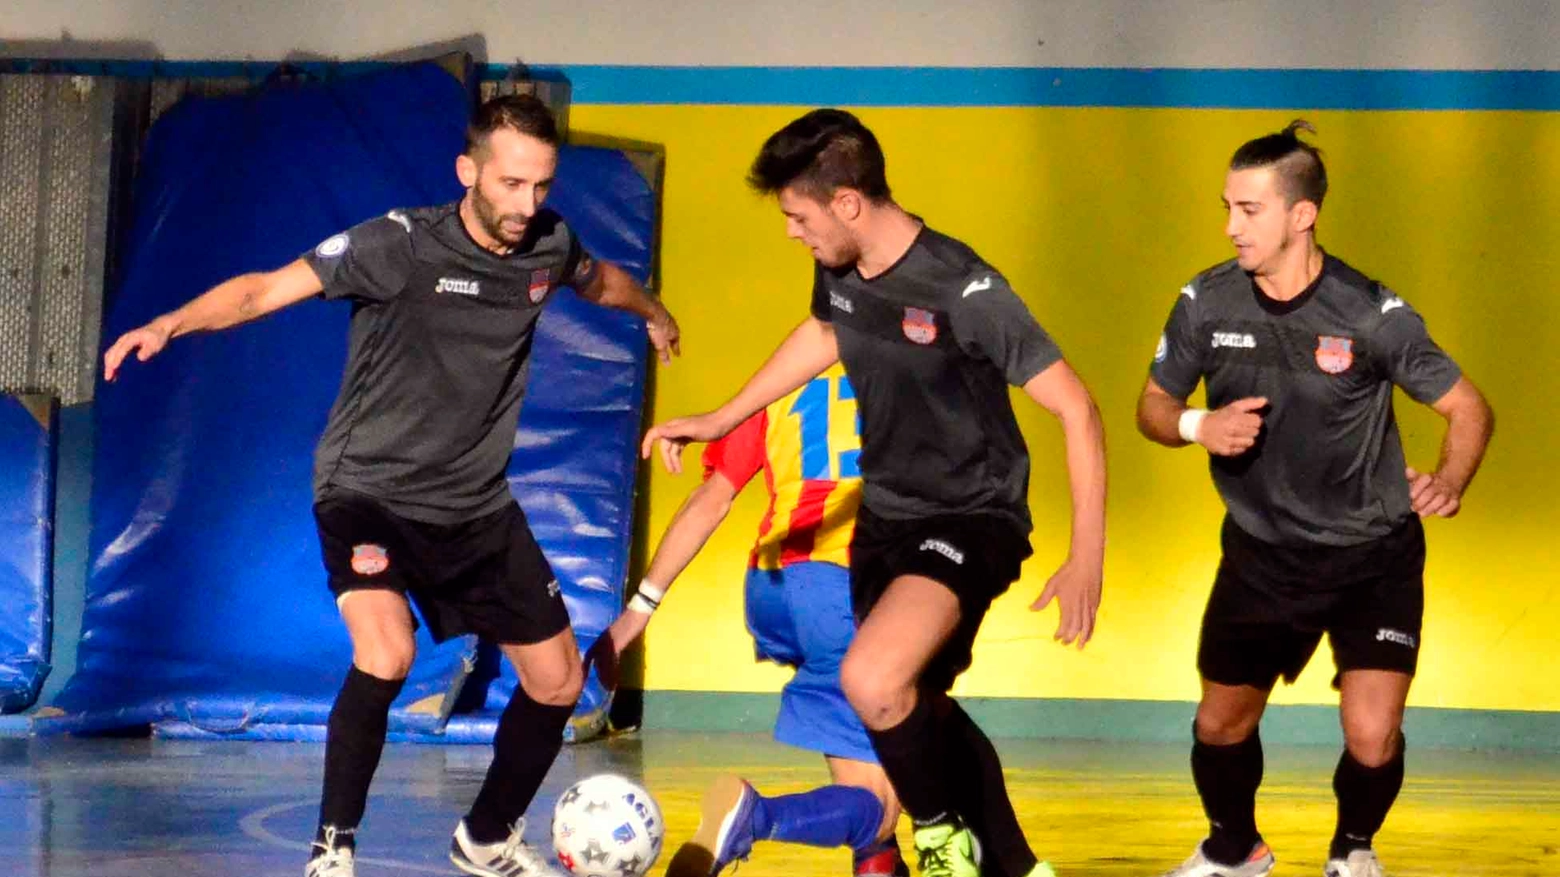 Futsal Pistoia: Roselli, Chiappelli e Di Lauro in azione